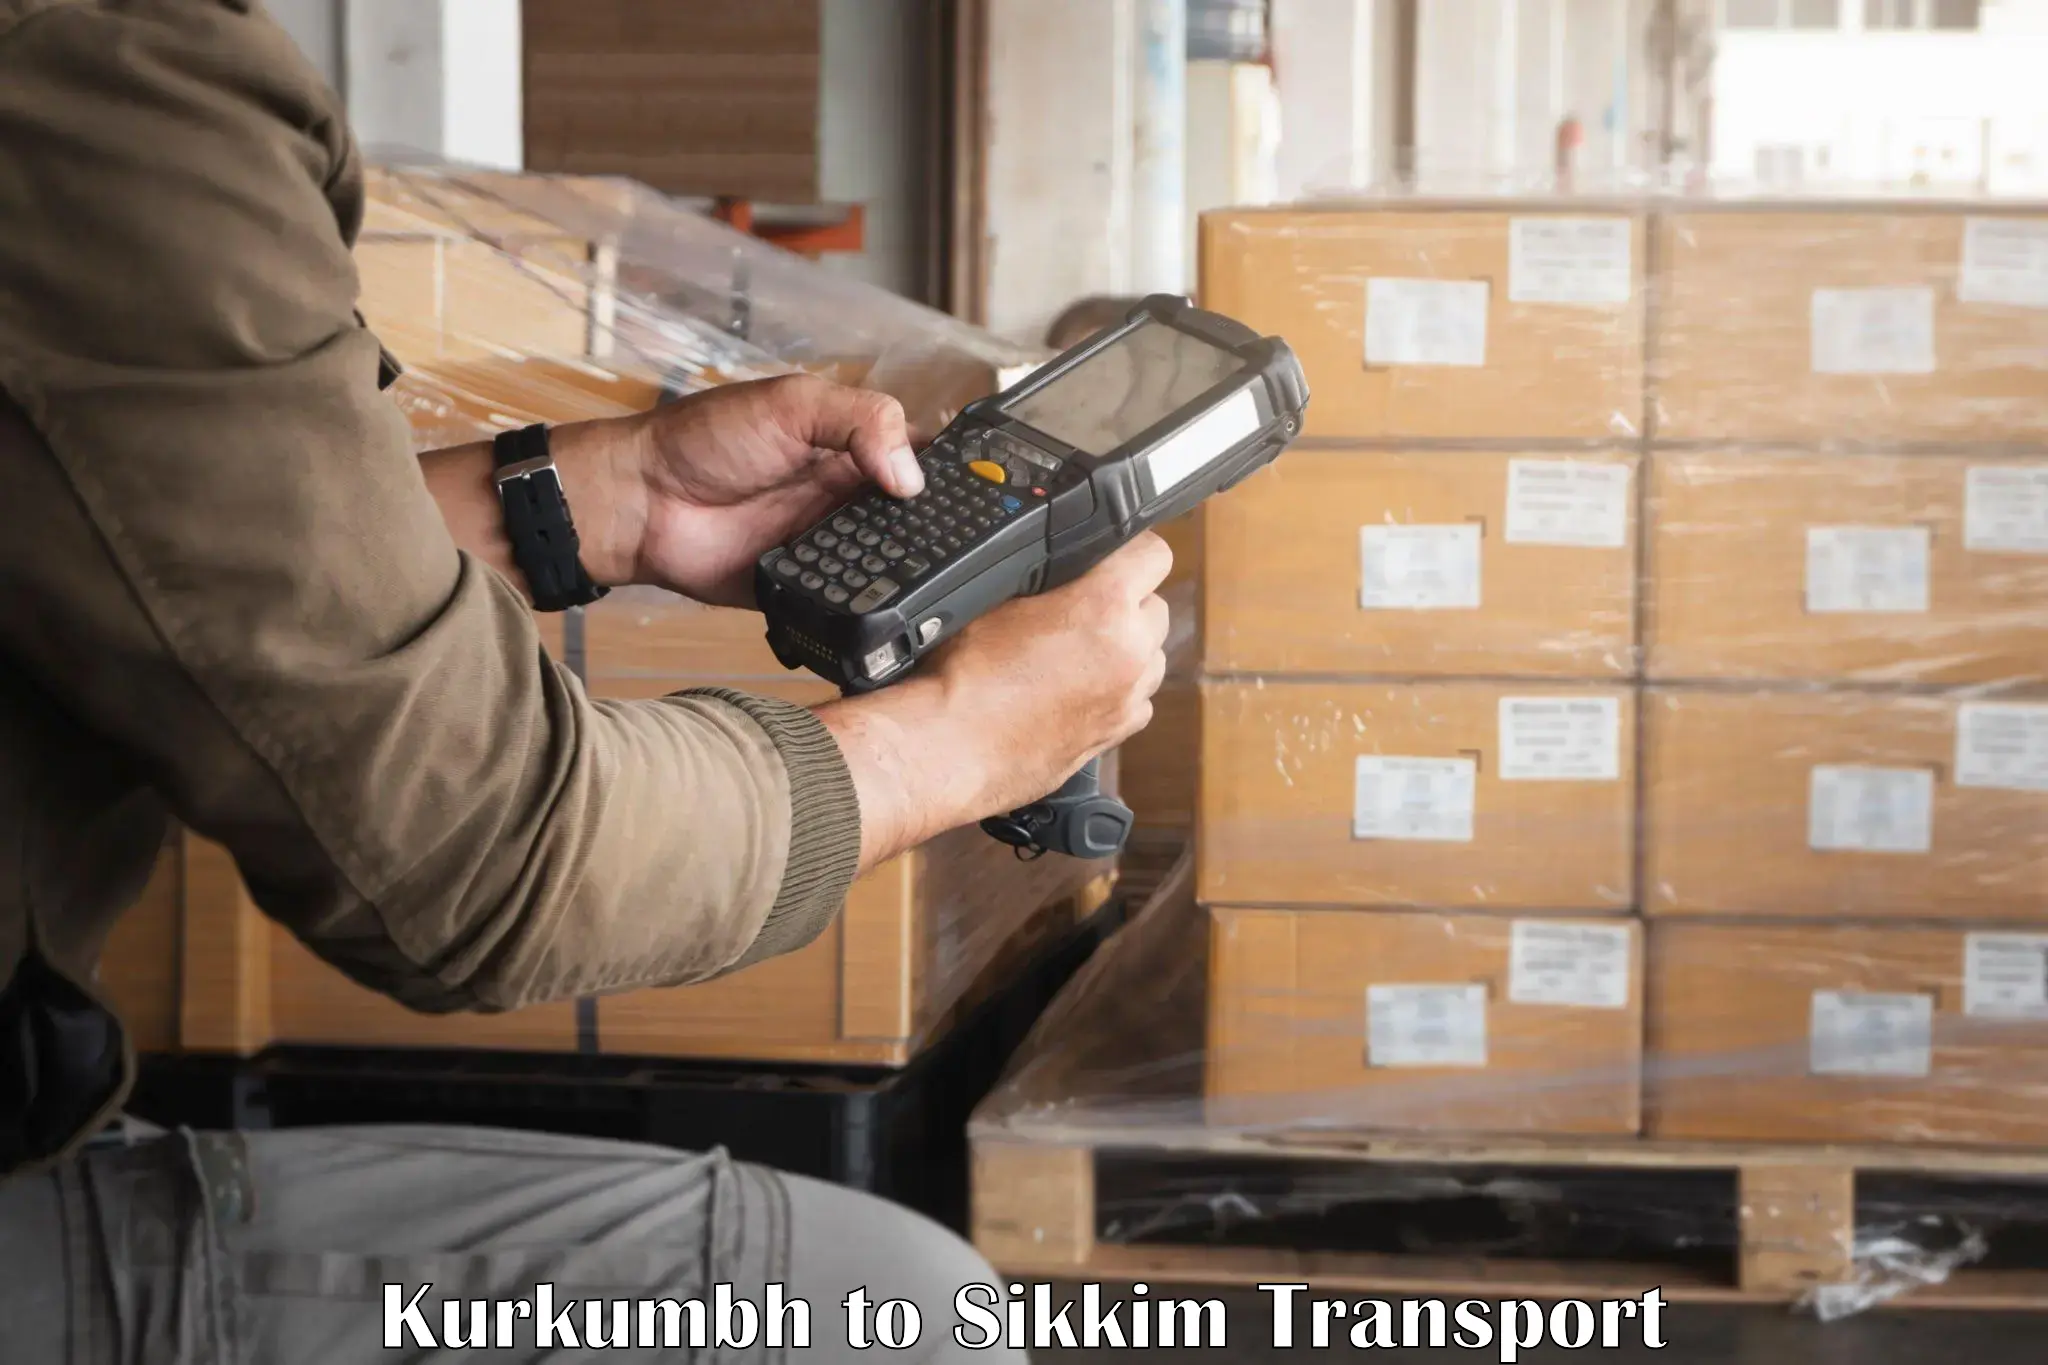 Shipping services Kurkumbh to North Sikkim